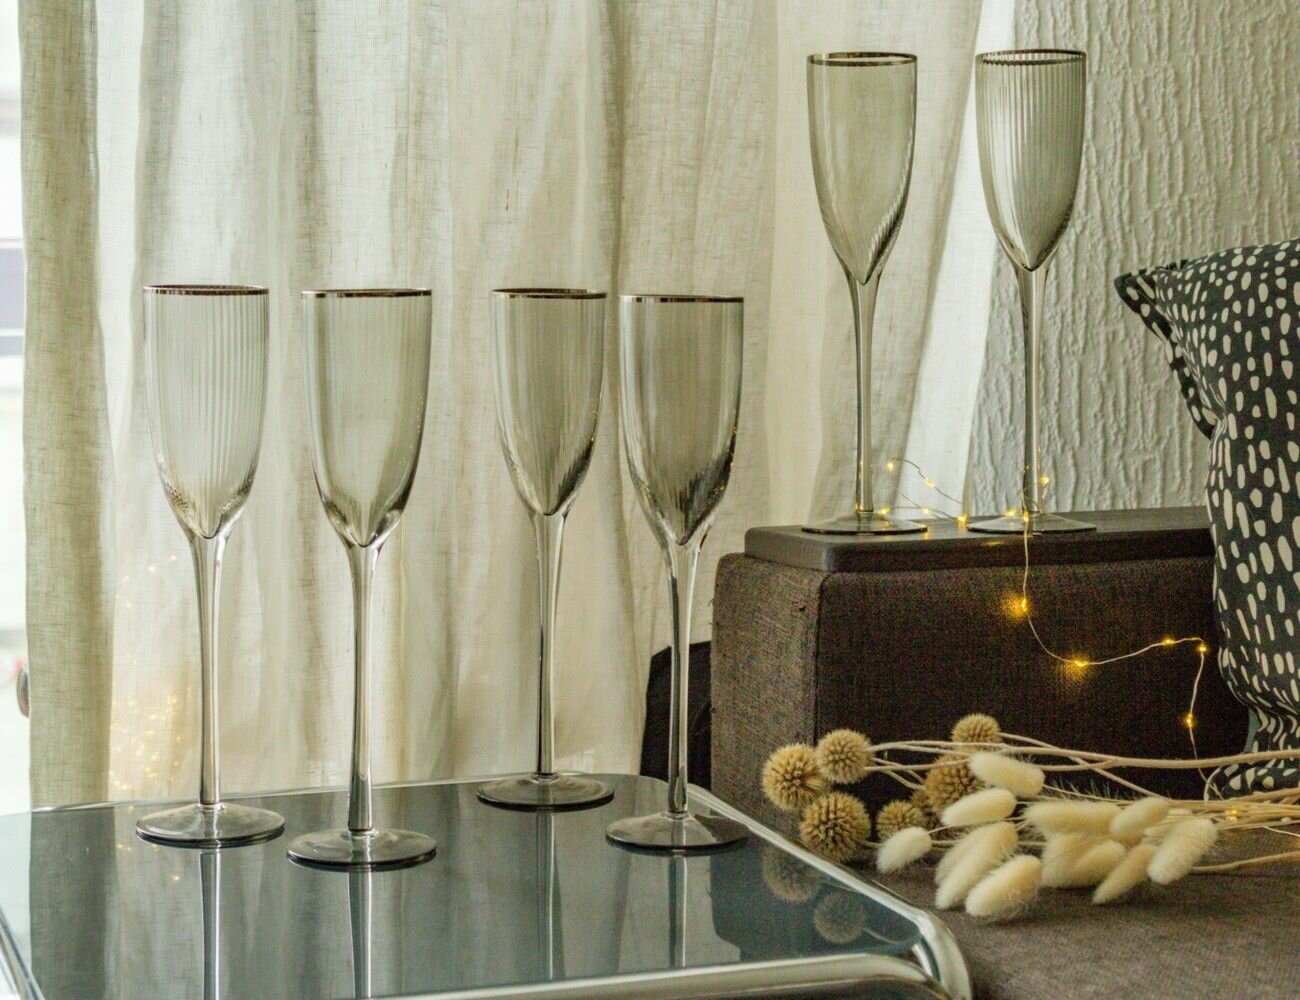 Набор бокалов для шампанского элеганца, стекло, дымчатый, 220 мл, 6 шт, Koopman International DP2011690